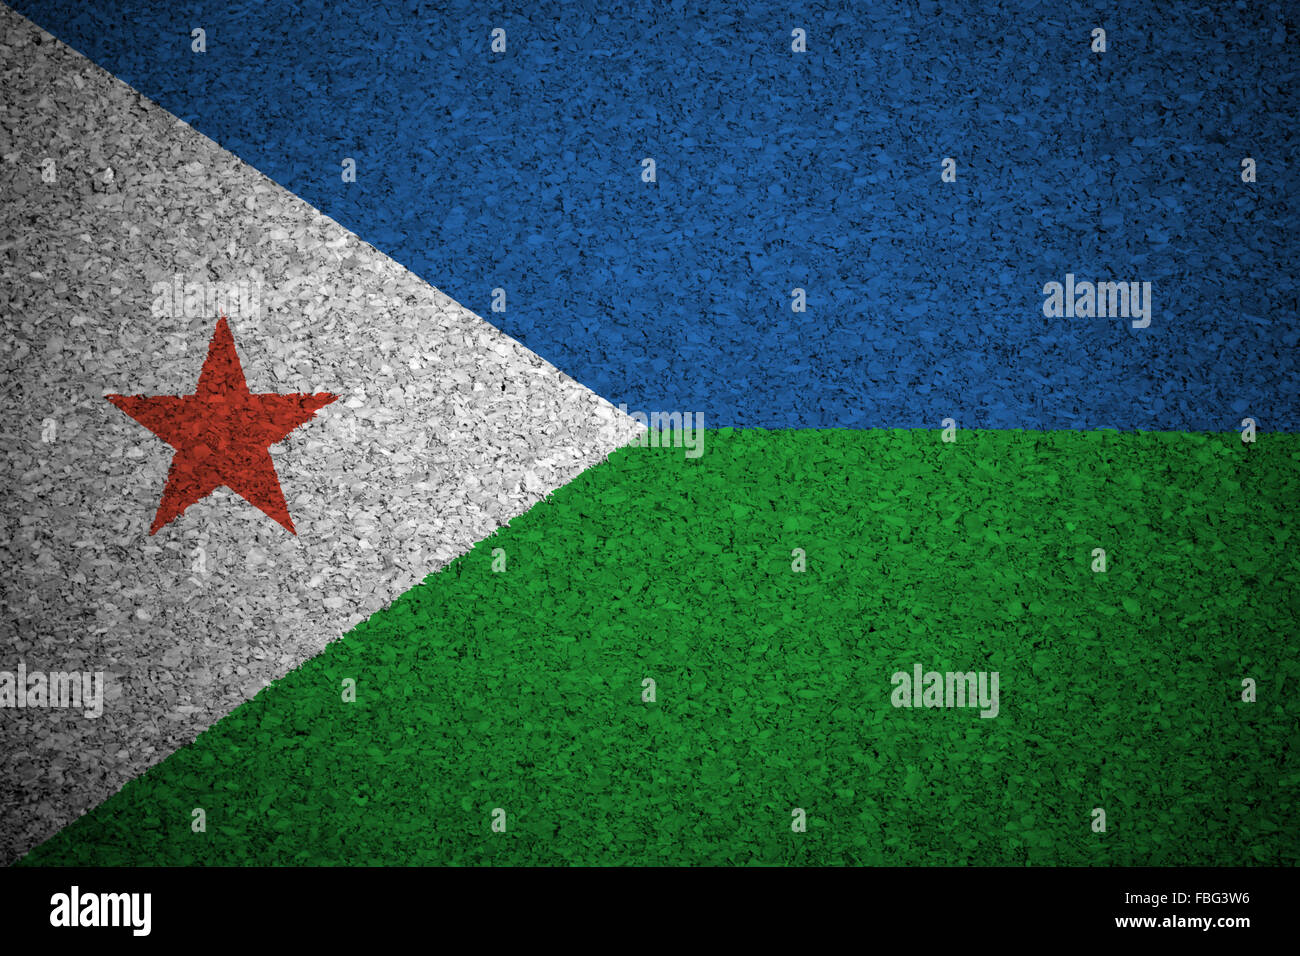 The Djibouti flag Stock Photo